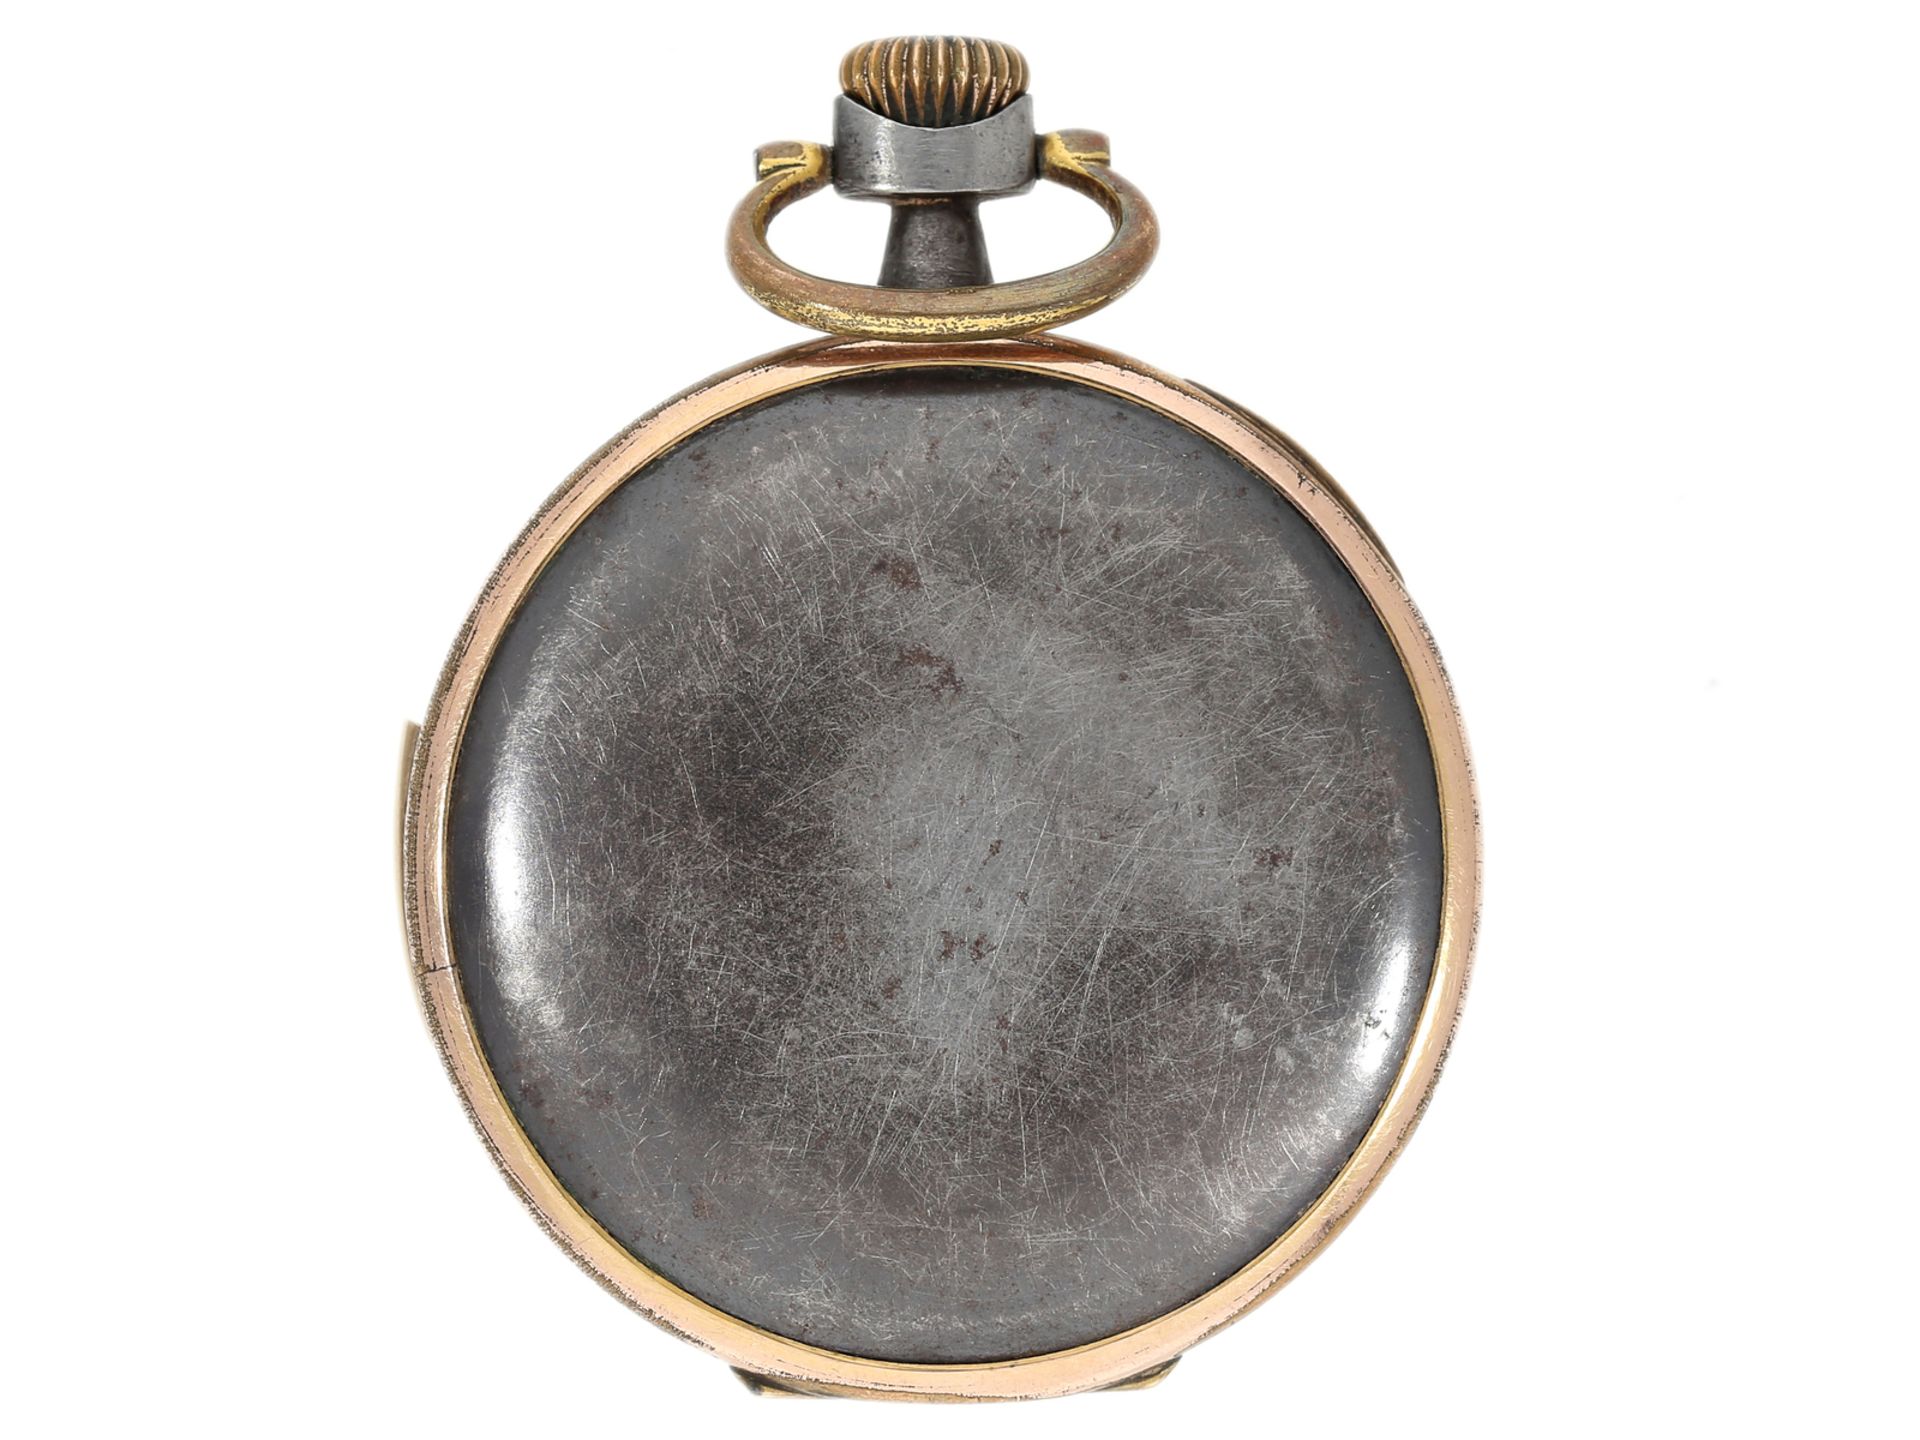 Taschenuhr: ungewöhnliche eiserne Taschenuhr mit Repetition, Alfred Lugrin um 1915 - Bild 2 aus 4